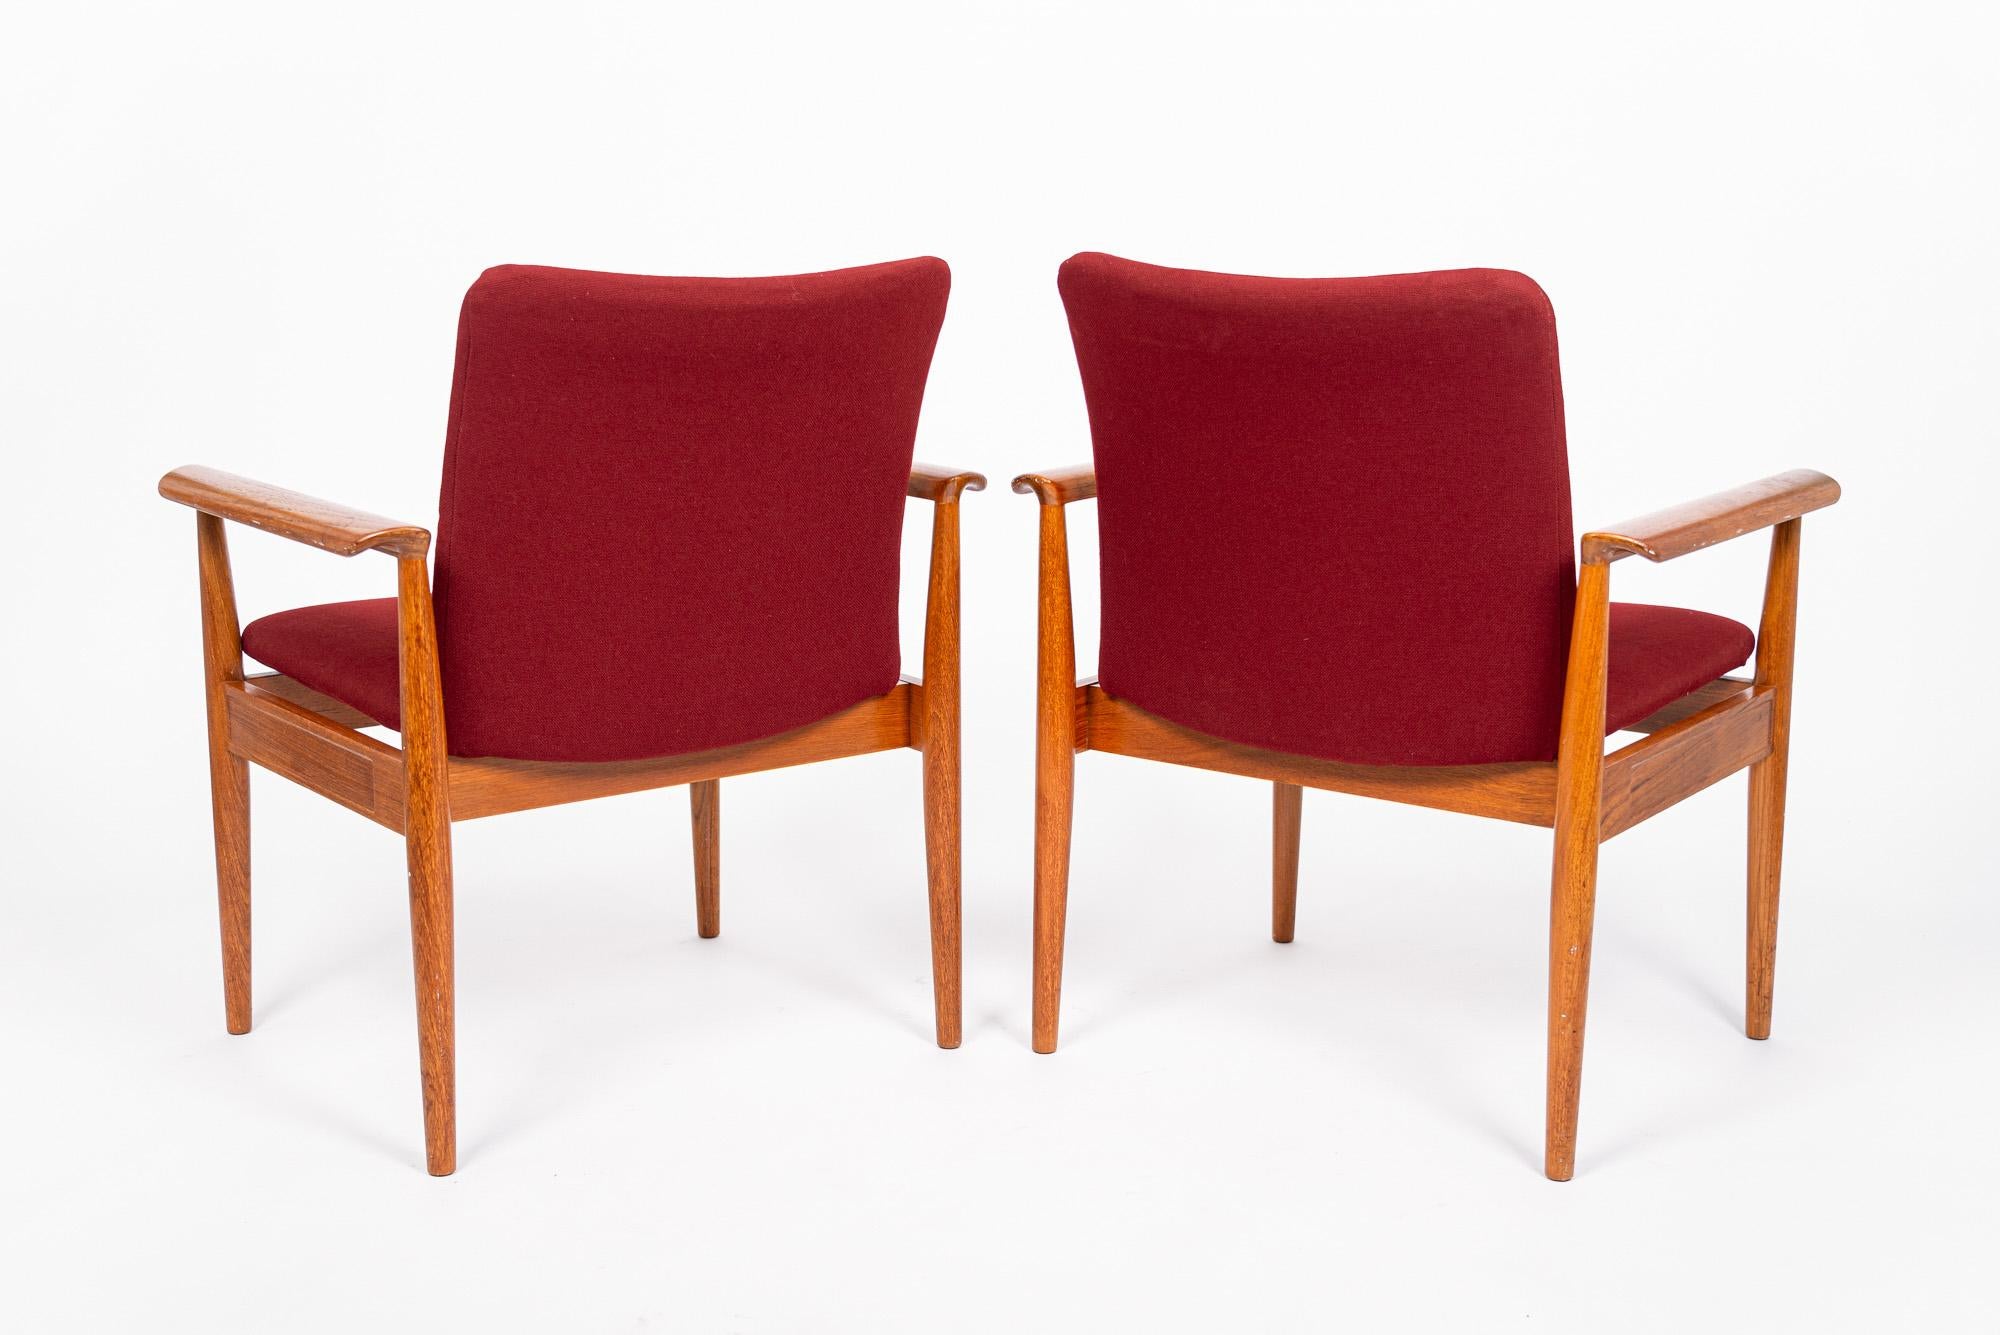 Upholstery Mid Century Danish Red Diplomat Chairs by Finn Juhl for France & Daverkosen For Sale